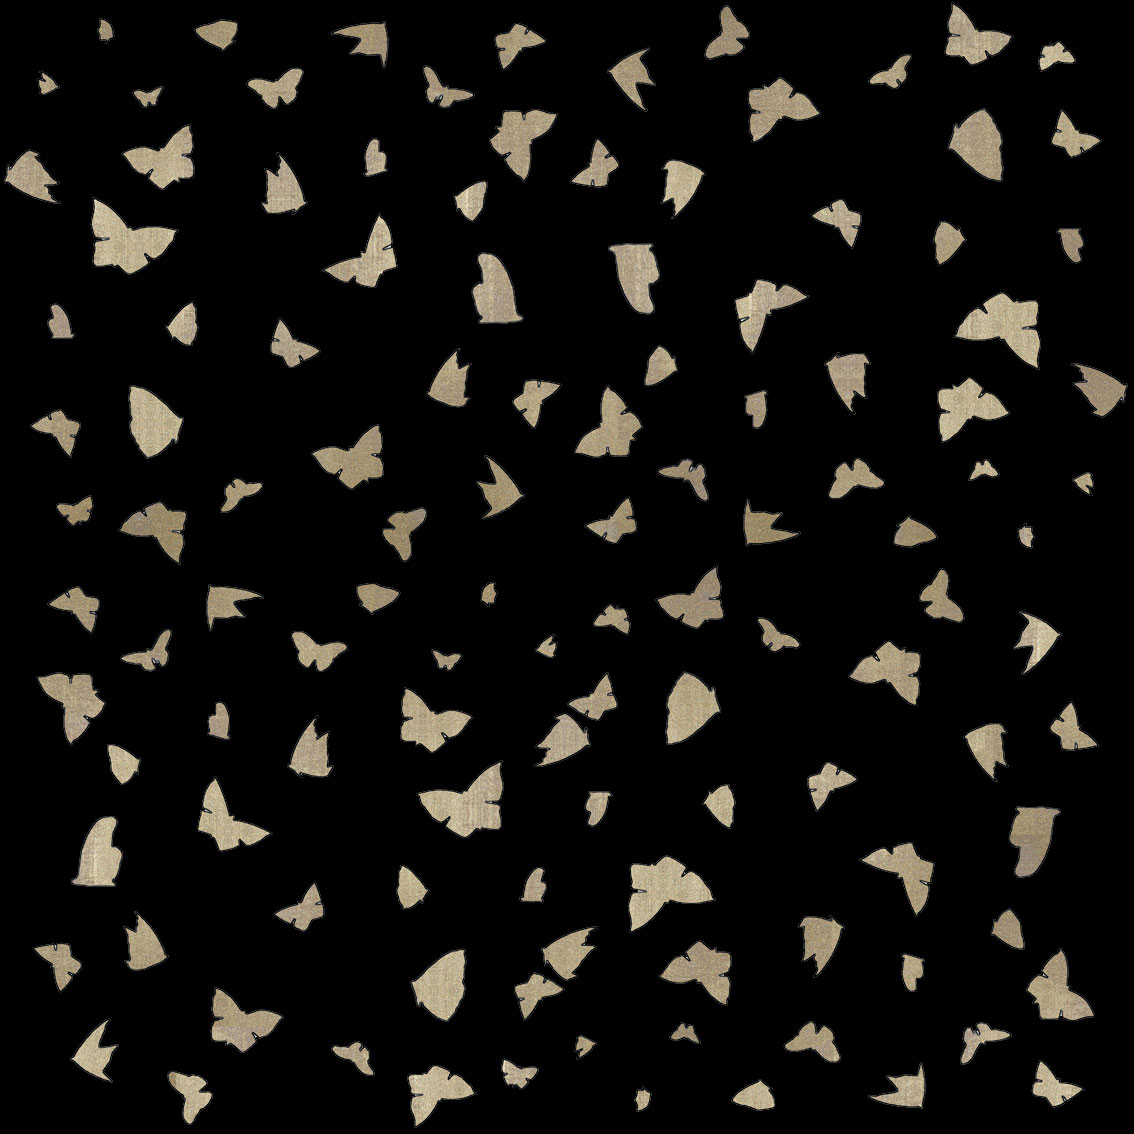 Golden Butterflies on Black papillon-lépidoptère-sphynx-aurore-bombyx-paon-du-jour-monarque Thierry Bisch artiste peintre contemporain animaux tableau art décoration biodiversité conservation 